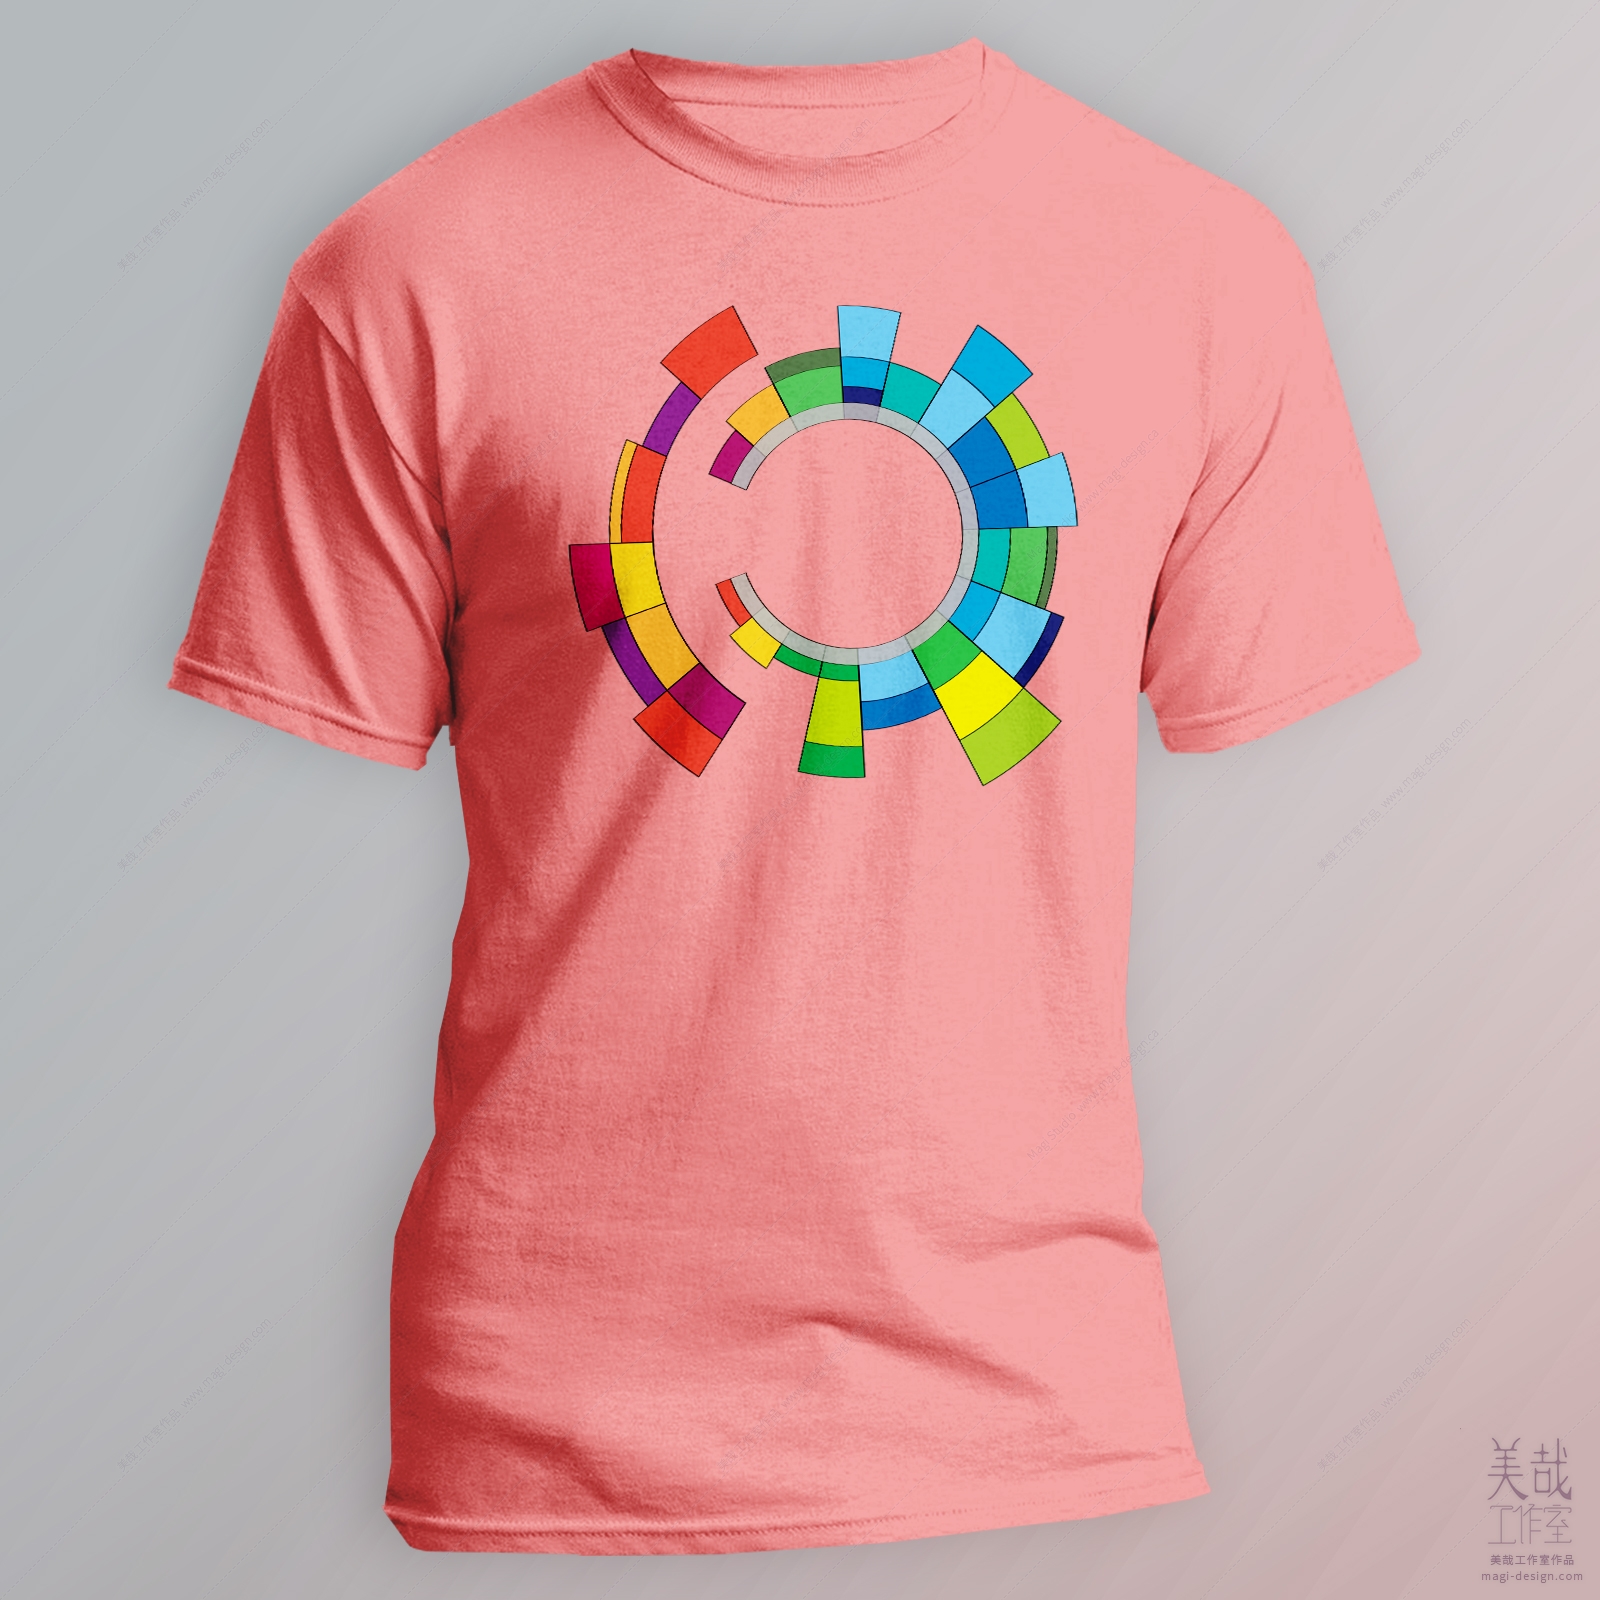 T恤图案设计效果图-粉色T恤